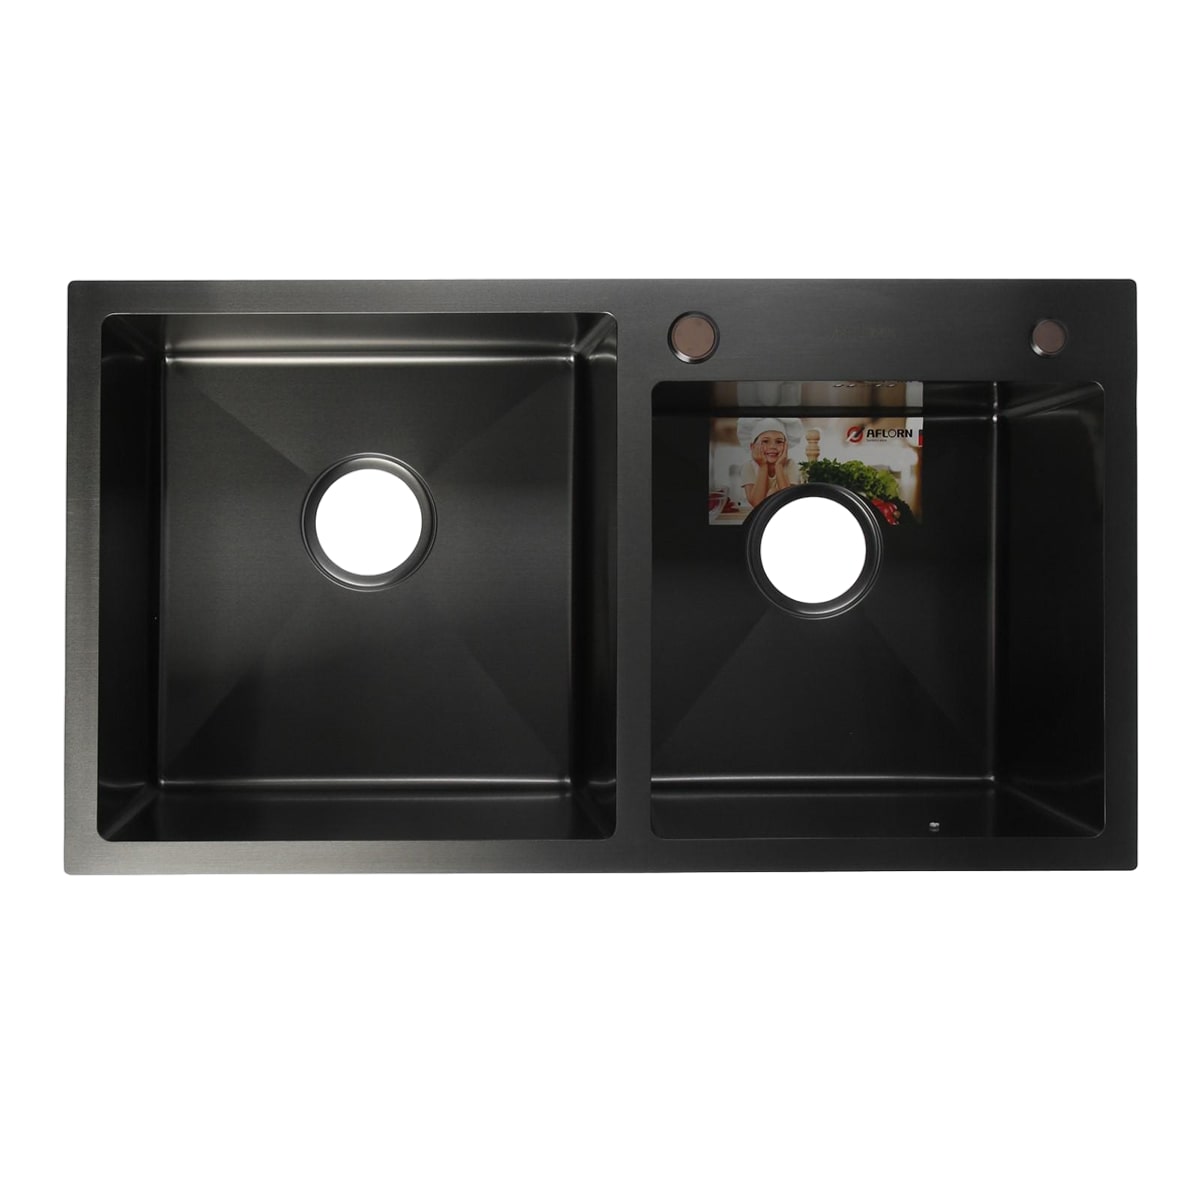 Мойка кухонная Aflorn 780x430 двойная врезная, толщина S 3,0 и 0,8 мм, с сифоном, нержавеющая сталь / графит